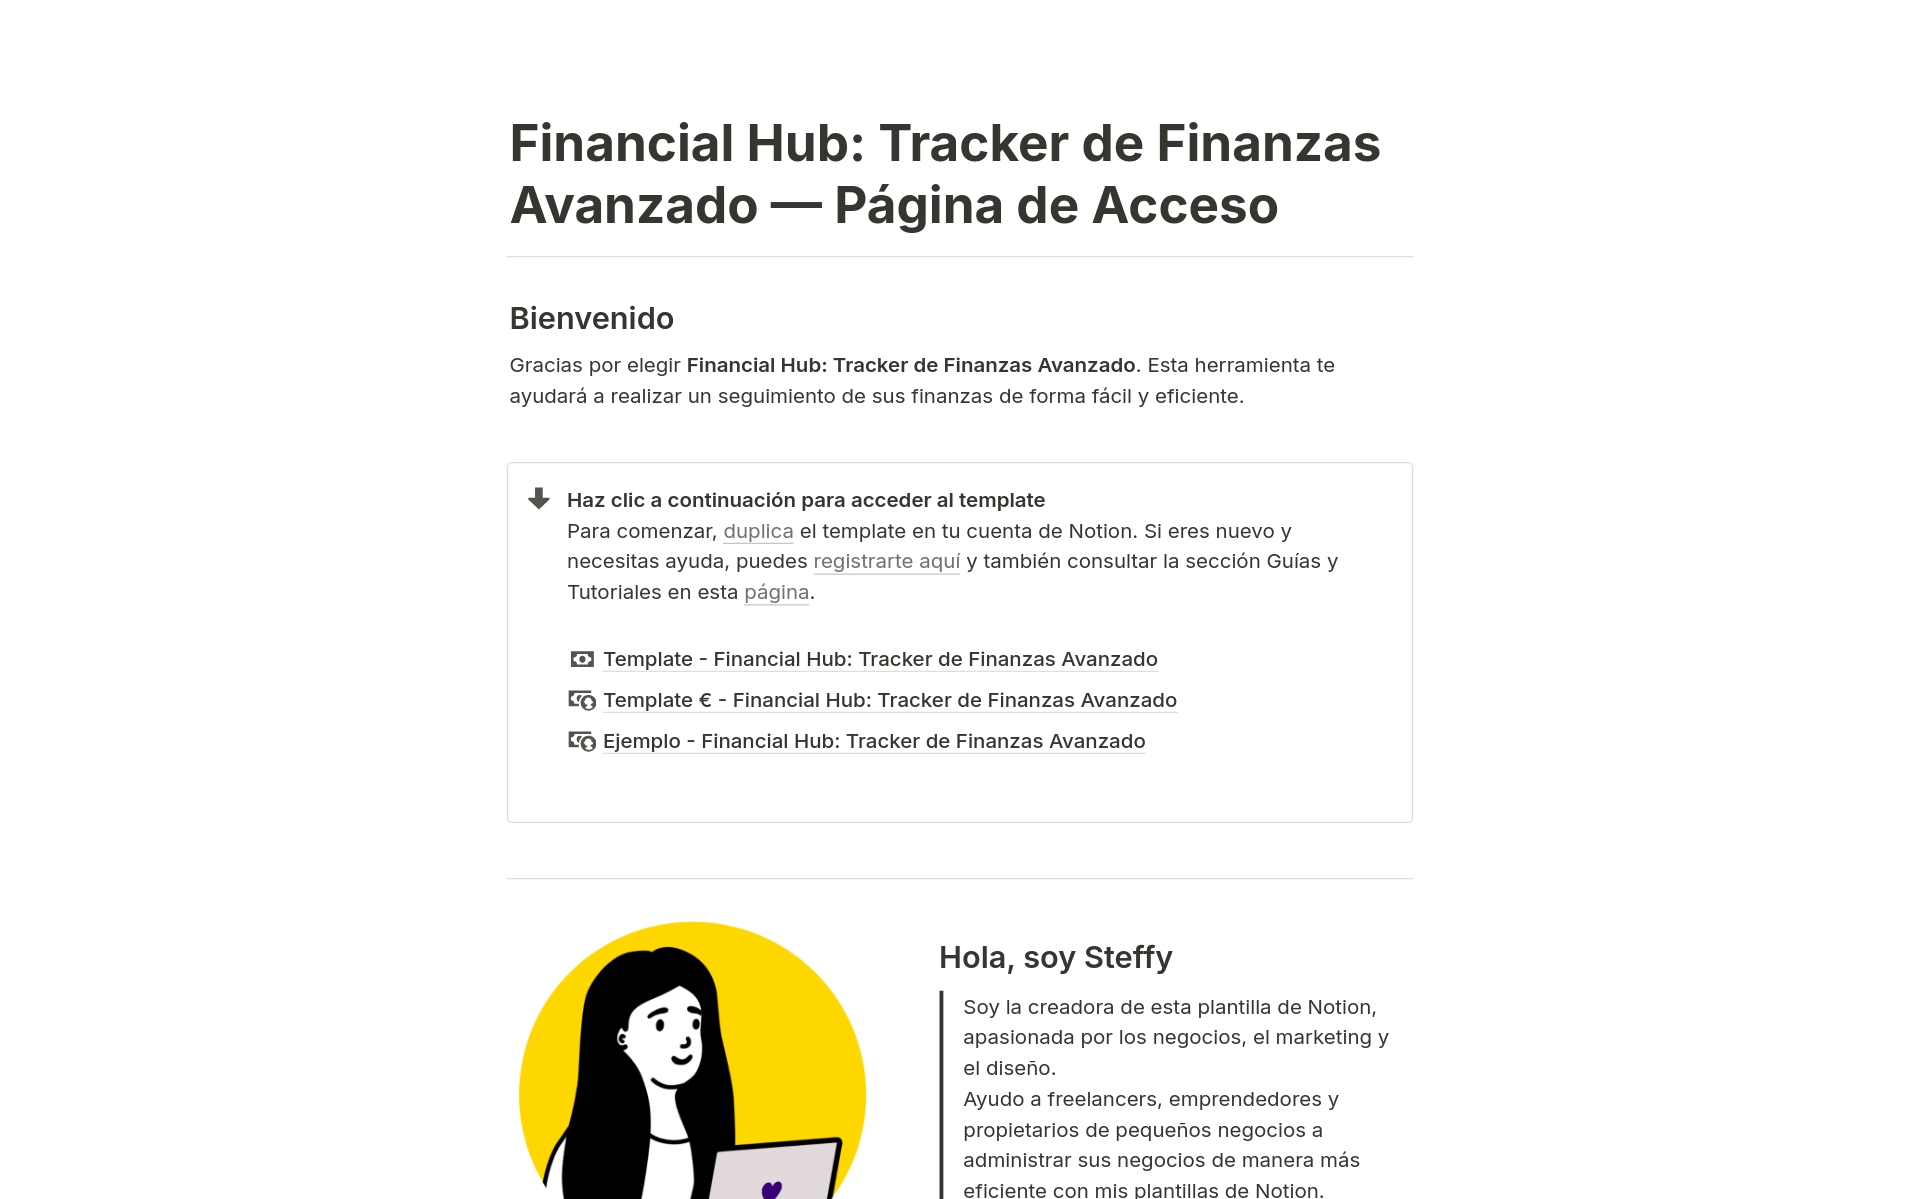 Vista previa de una plantilla para Tracker de Finanzas Avanzado